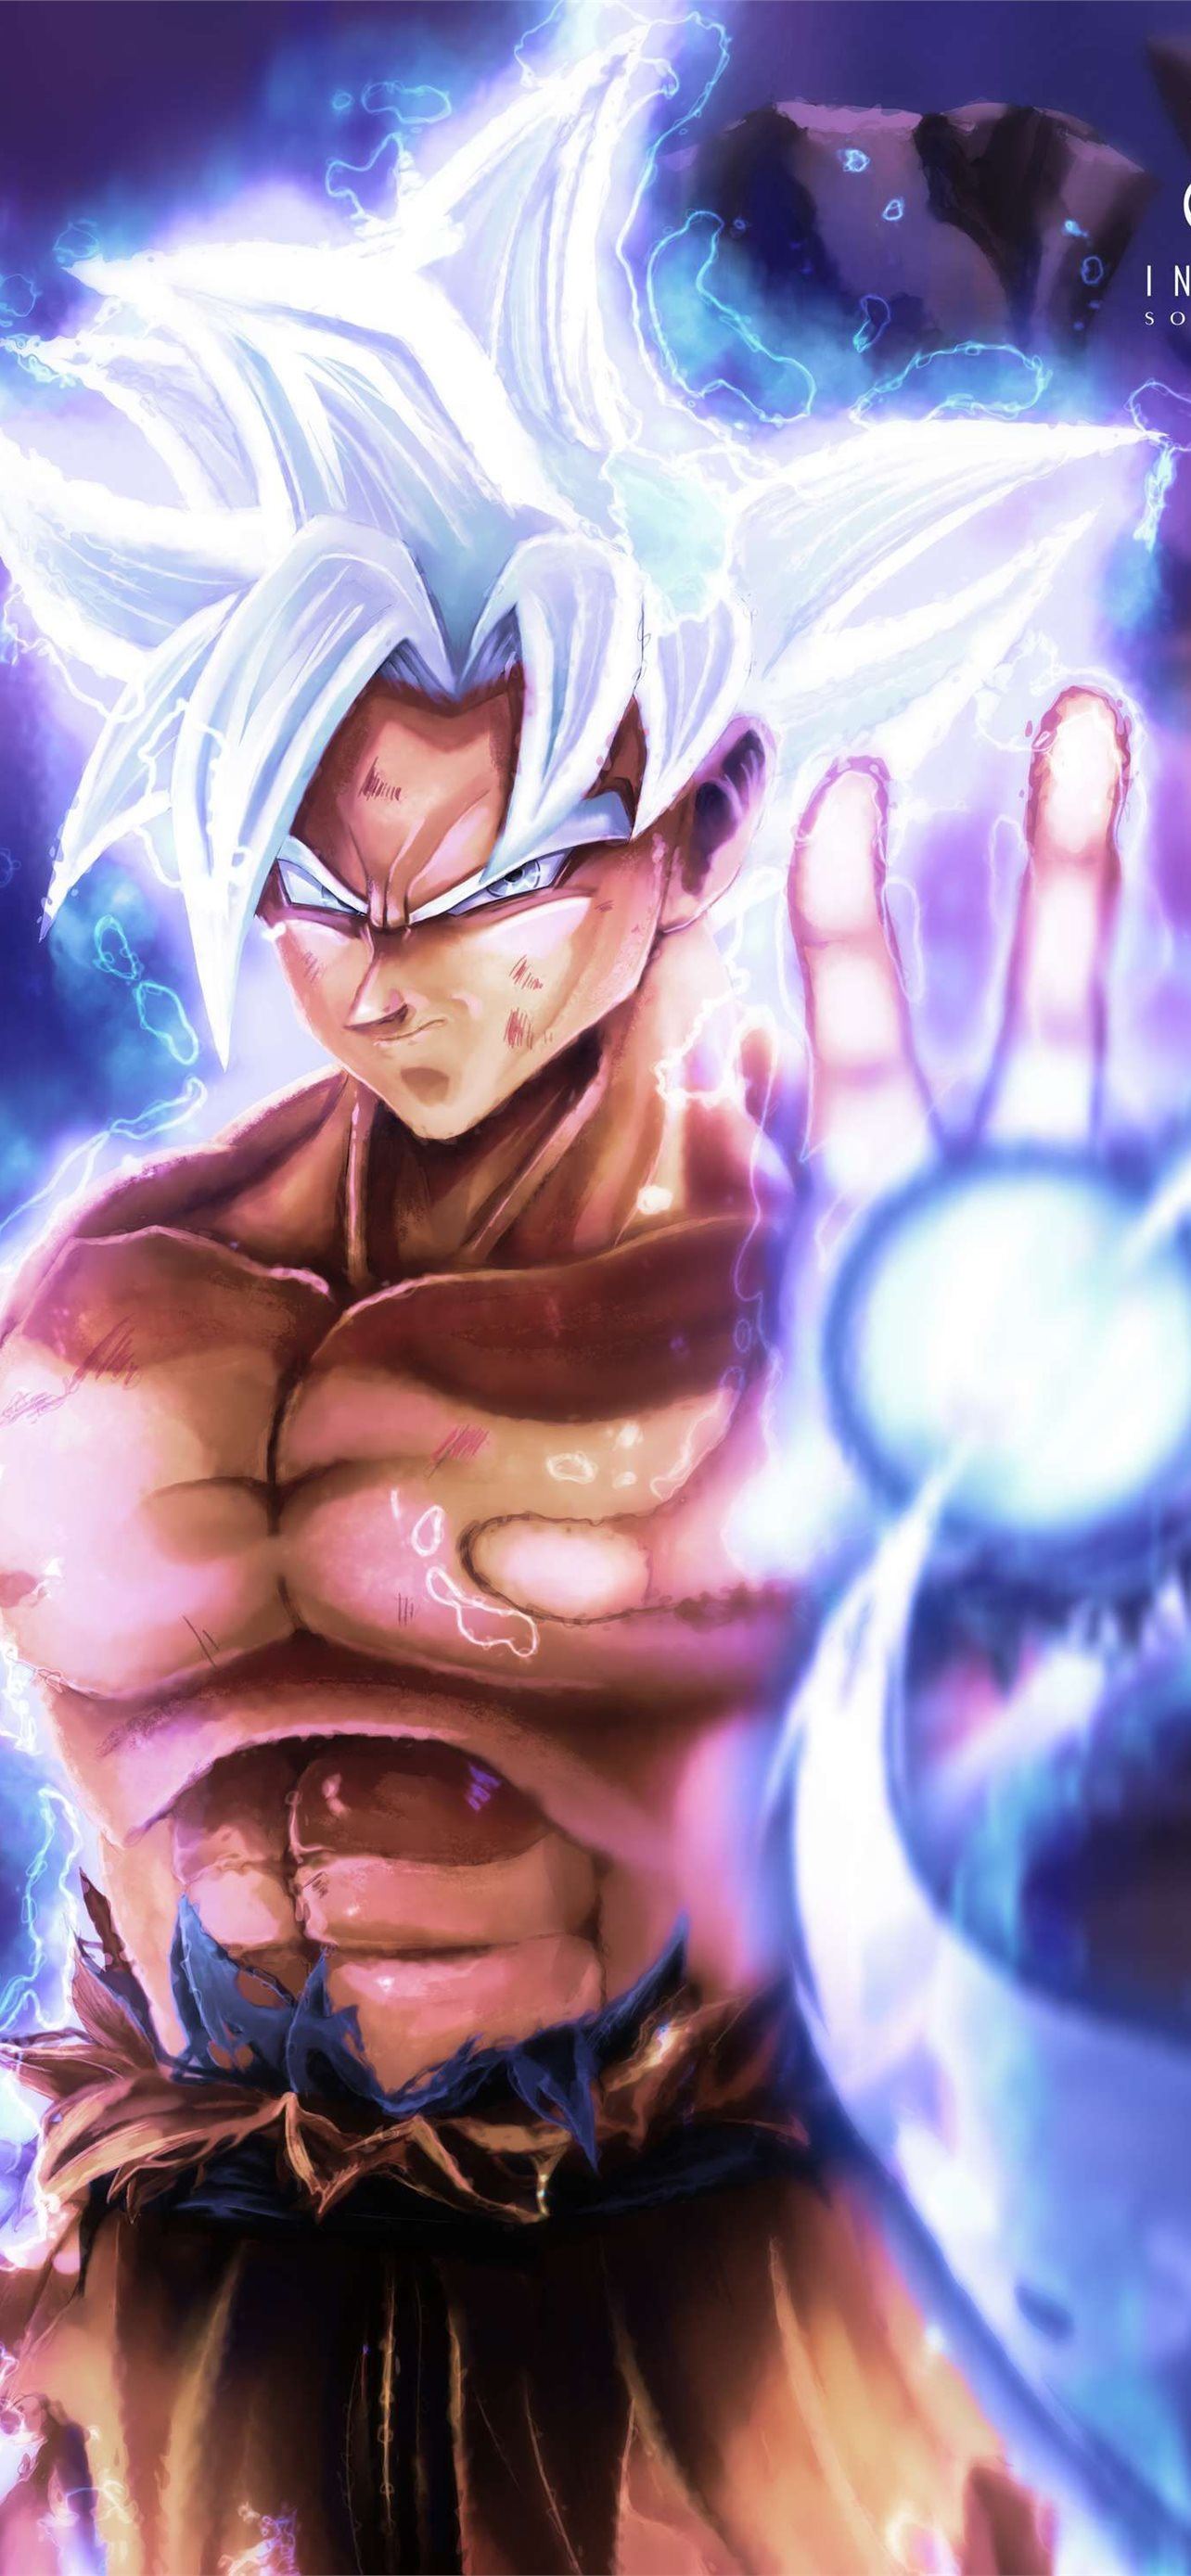 Goku ultra instinct: Đến với hình ảnh về Goku Ultra Instinct, phiên bản siêu năng lực của anh hùng Dragon Ball này. Bức hình chụp lại khoảnh khắc Goku đang phát huy sức mạnh siêu nhanh, biến đổi khôn lường sẽ khiến bạn mãn nhãn ngay từ cái nhìn đầu tiên.